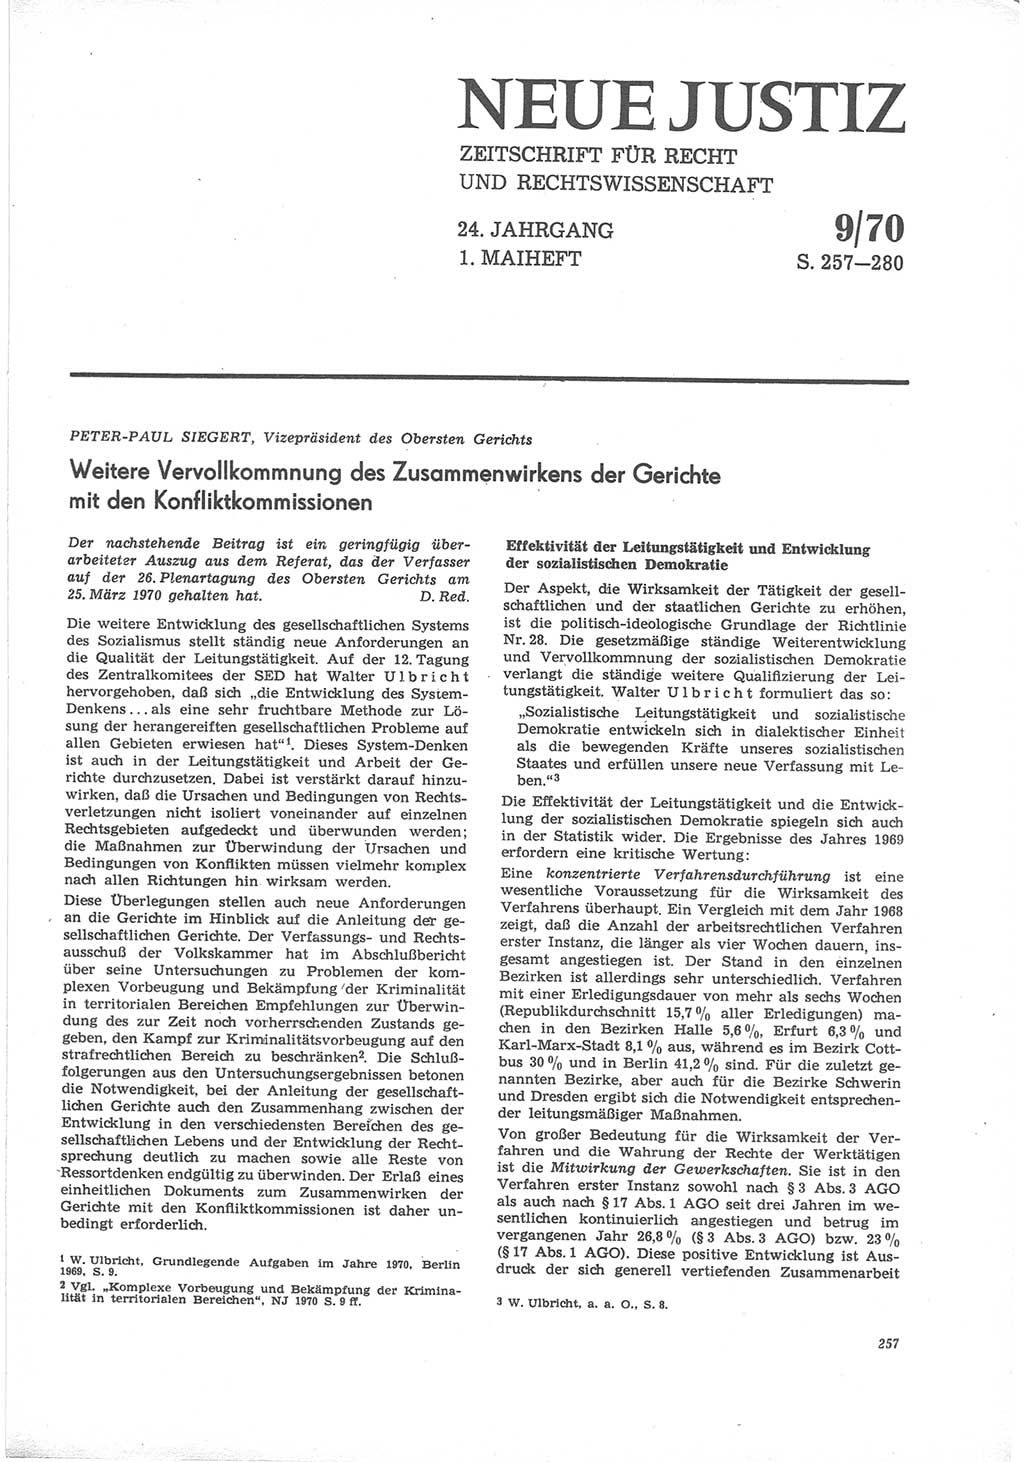 Neue Justiz (NJ), Zeitschrift für Recht und Rechtswissenschaft [Deutsche Demokratische Republik (DDR)], 24. Jahrgang 1970, Seite 257 (NJ DDR 1970, S. 257)